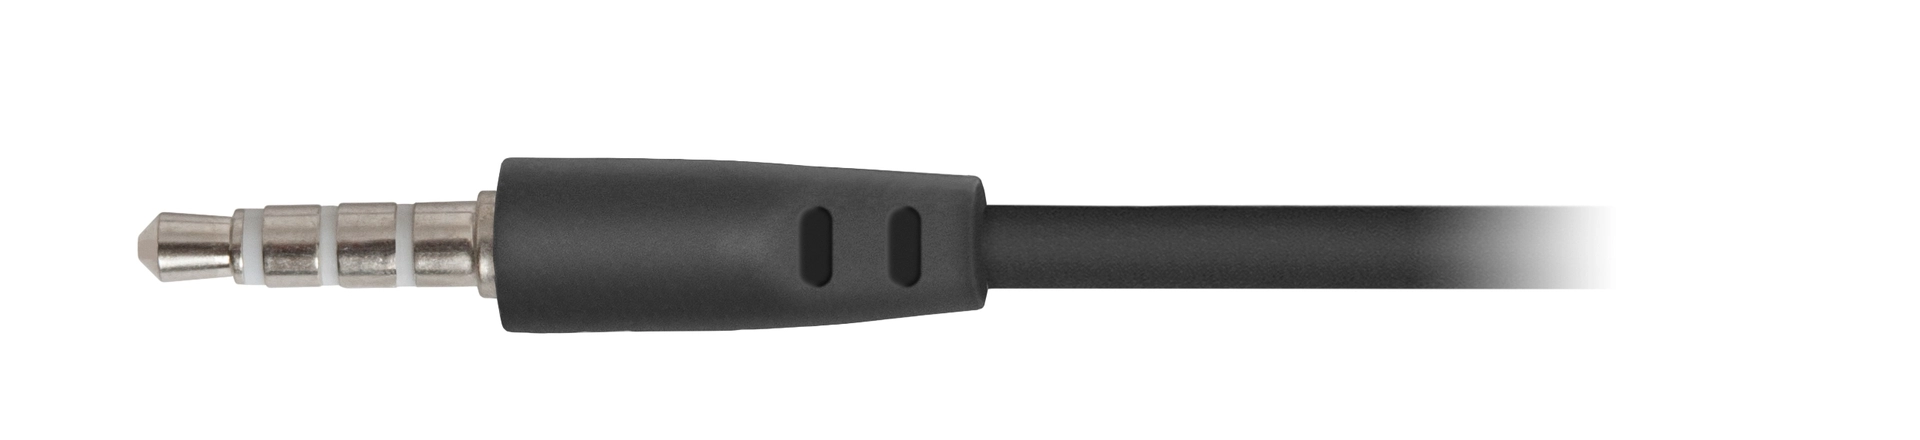 Наушники проводные DEFENDER Pulse 420 black/orange (63420)